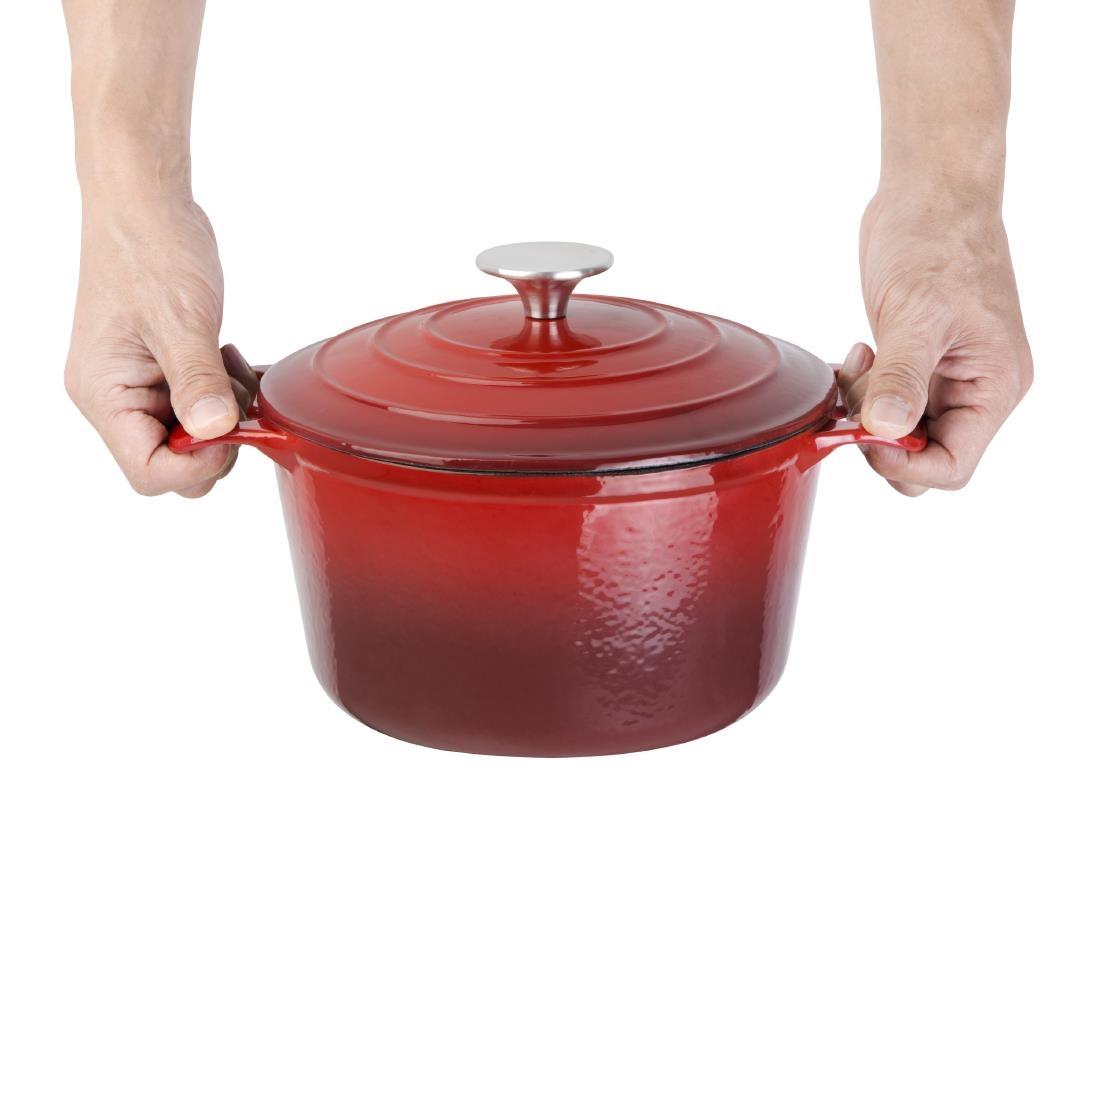 Vogue Red Round Casserole Dish 3.2Ltr - GH304  - 6